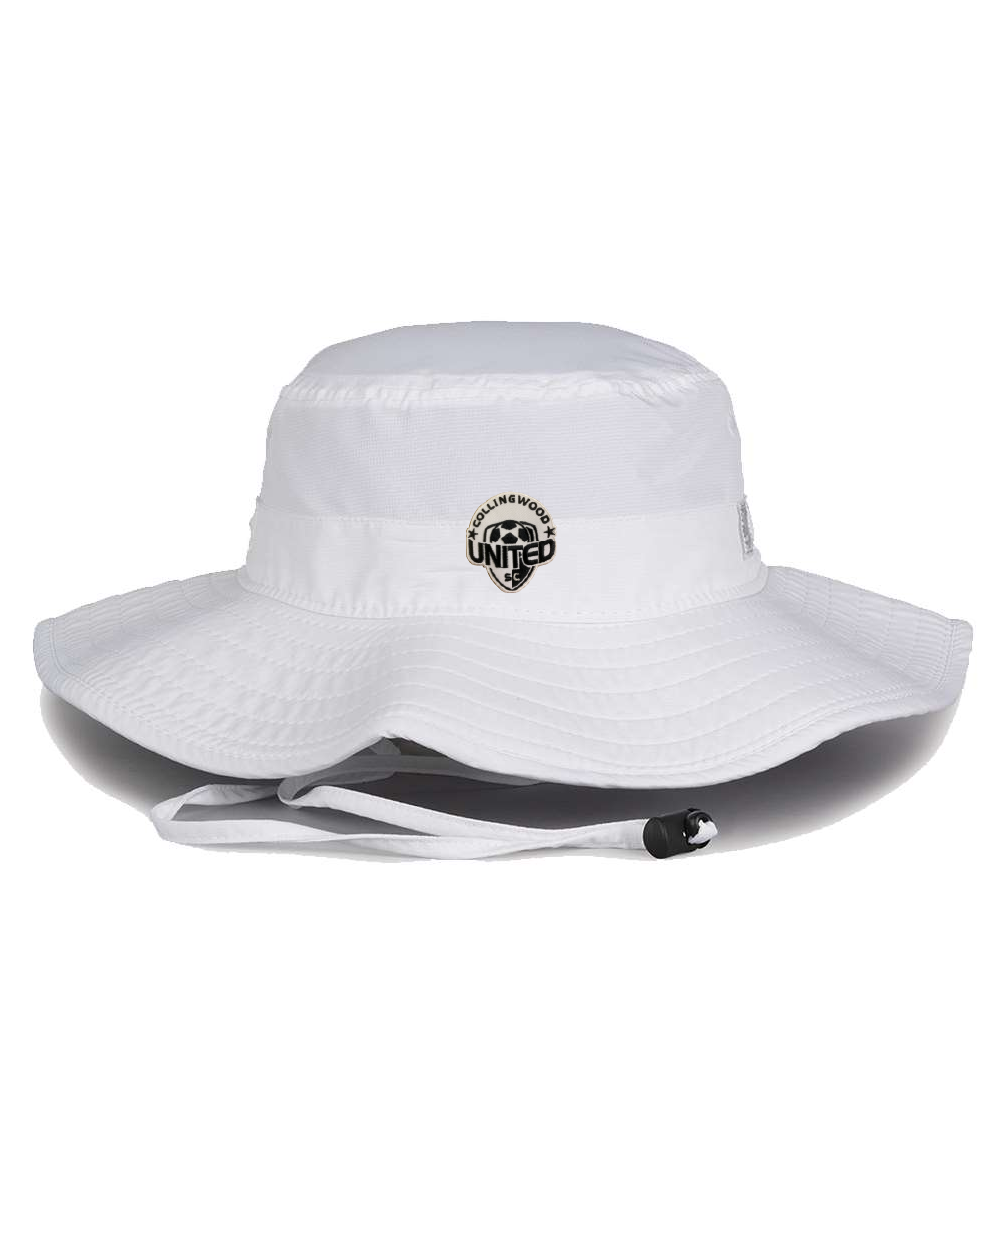 CUSC Bucket Hat